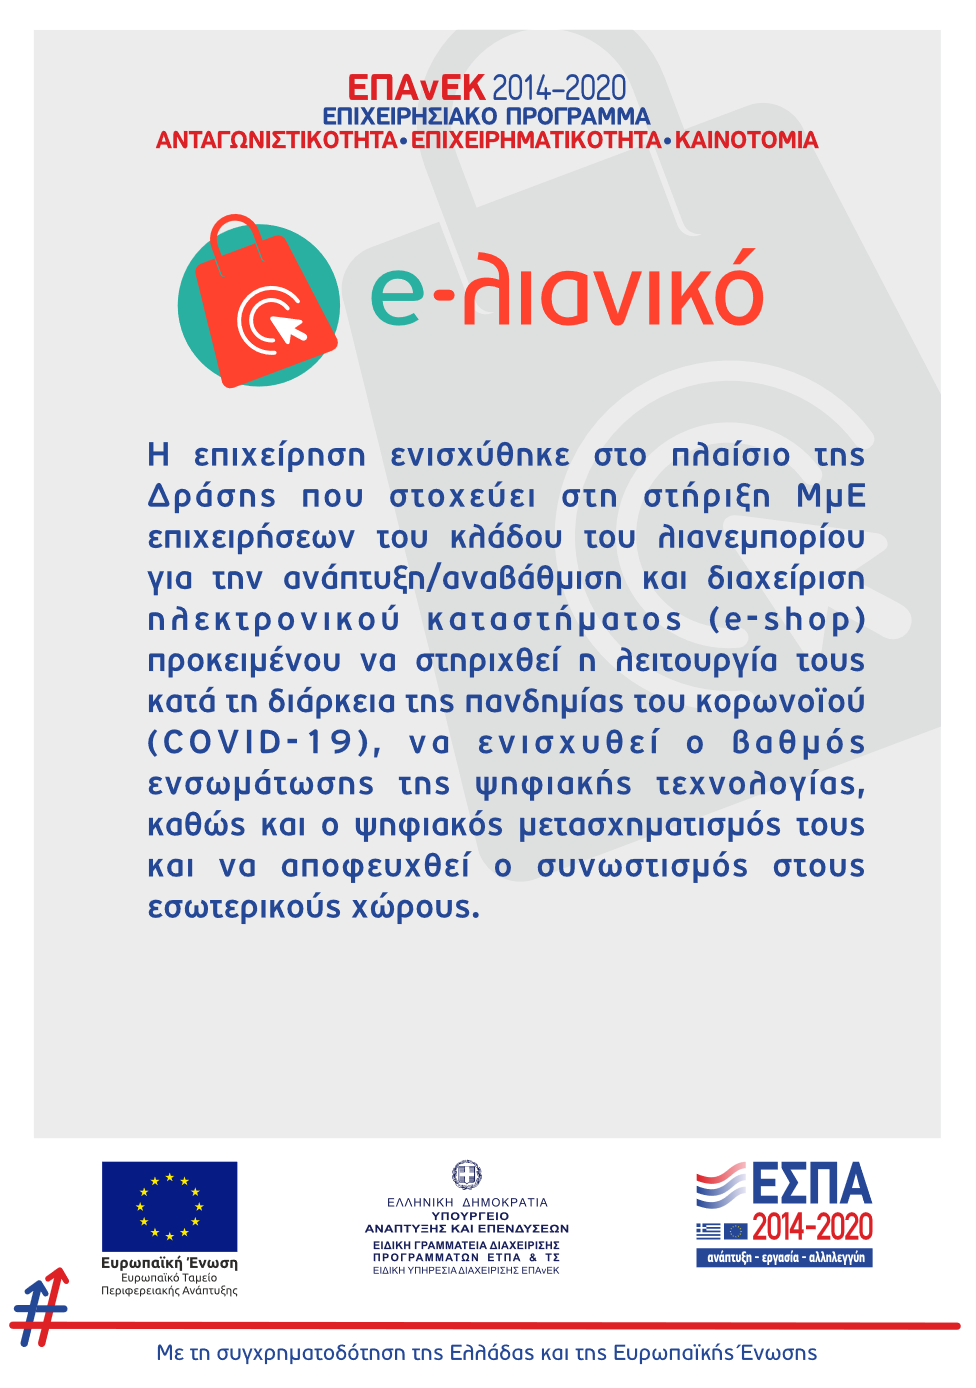 Banner of EPANEK 2014-2020